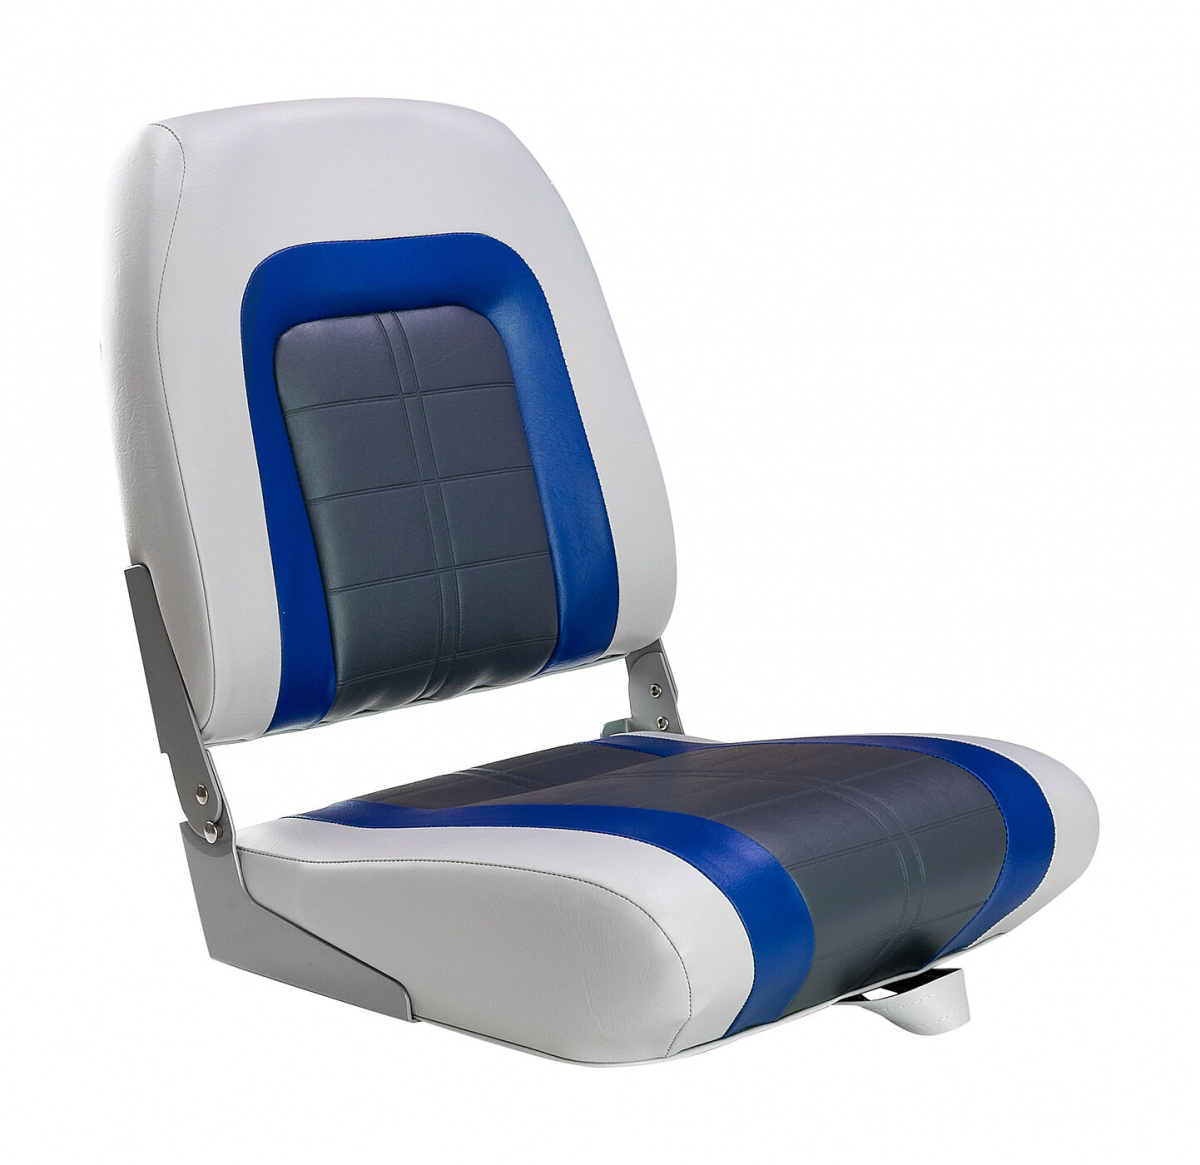 Кресло мягкое складное Special, обивка винил, цвет серый/синий/угольный, Marine Rocket, 889-7704